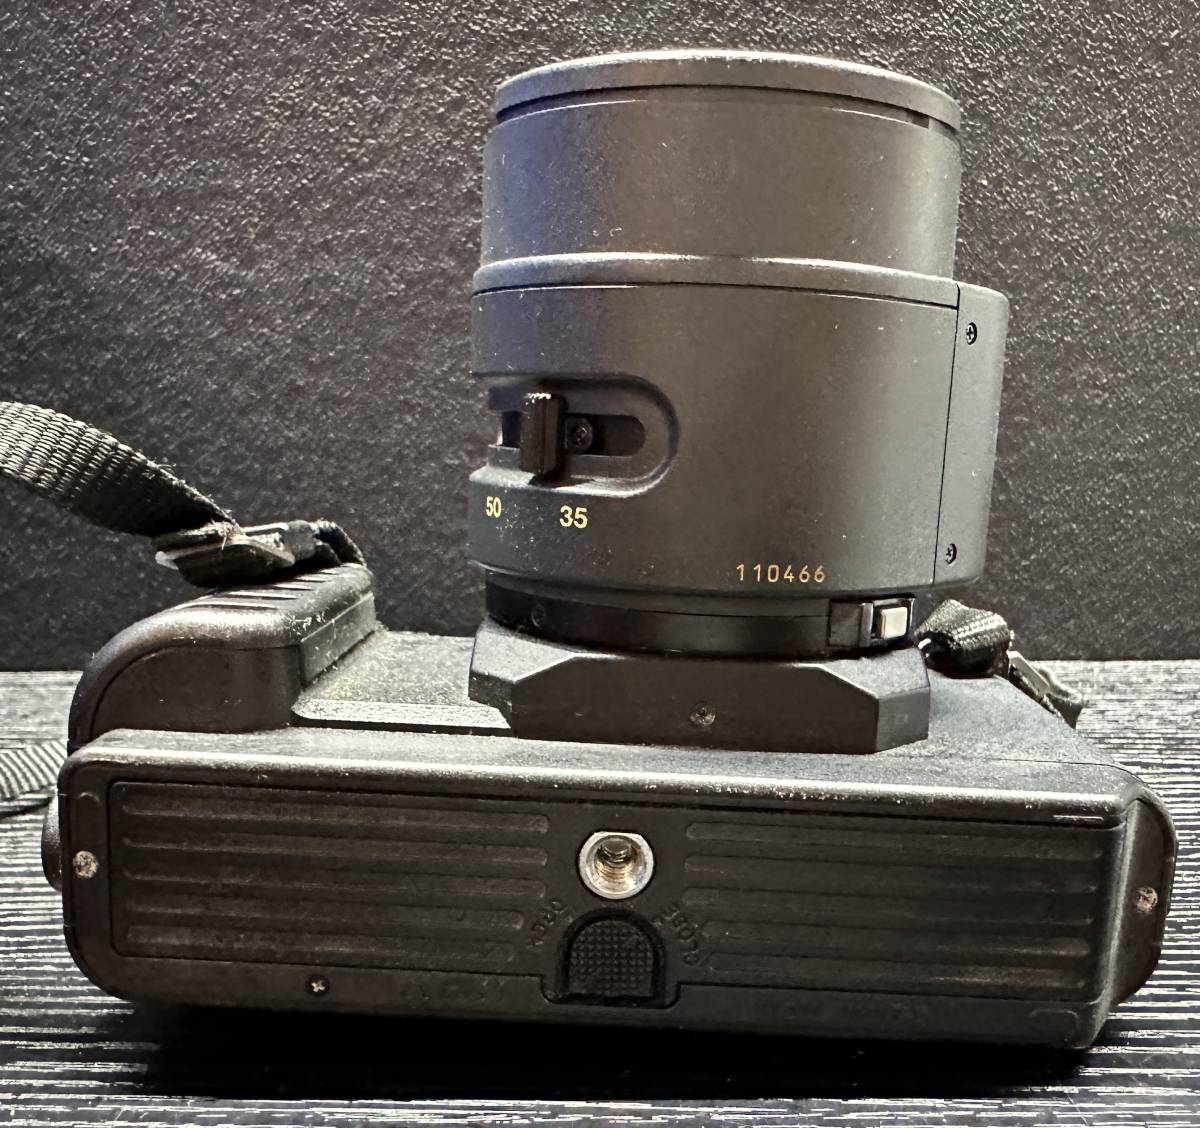 Canon T80 キャノン /CANON ZOOM LENS AC 35-70mm 1:3.5-4.5 フィルムカメラ #2015